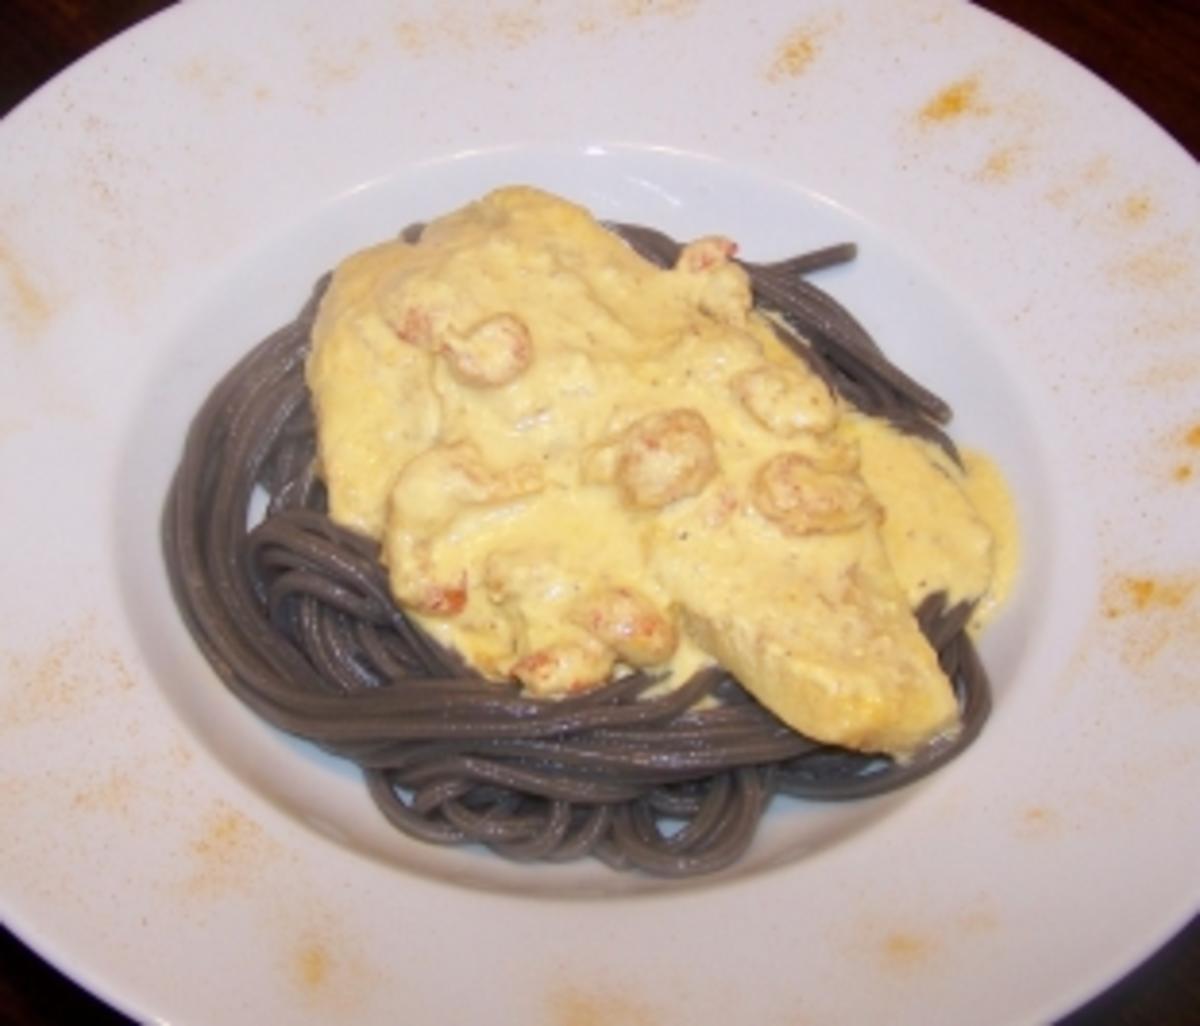 Tilapiafilet auf Tintenfischspaghetti in Safransauce - Rezept Gesendet
von Anni2000